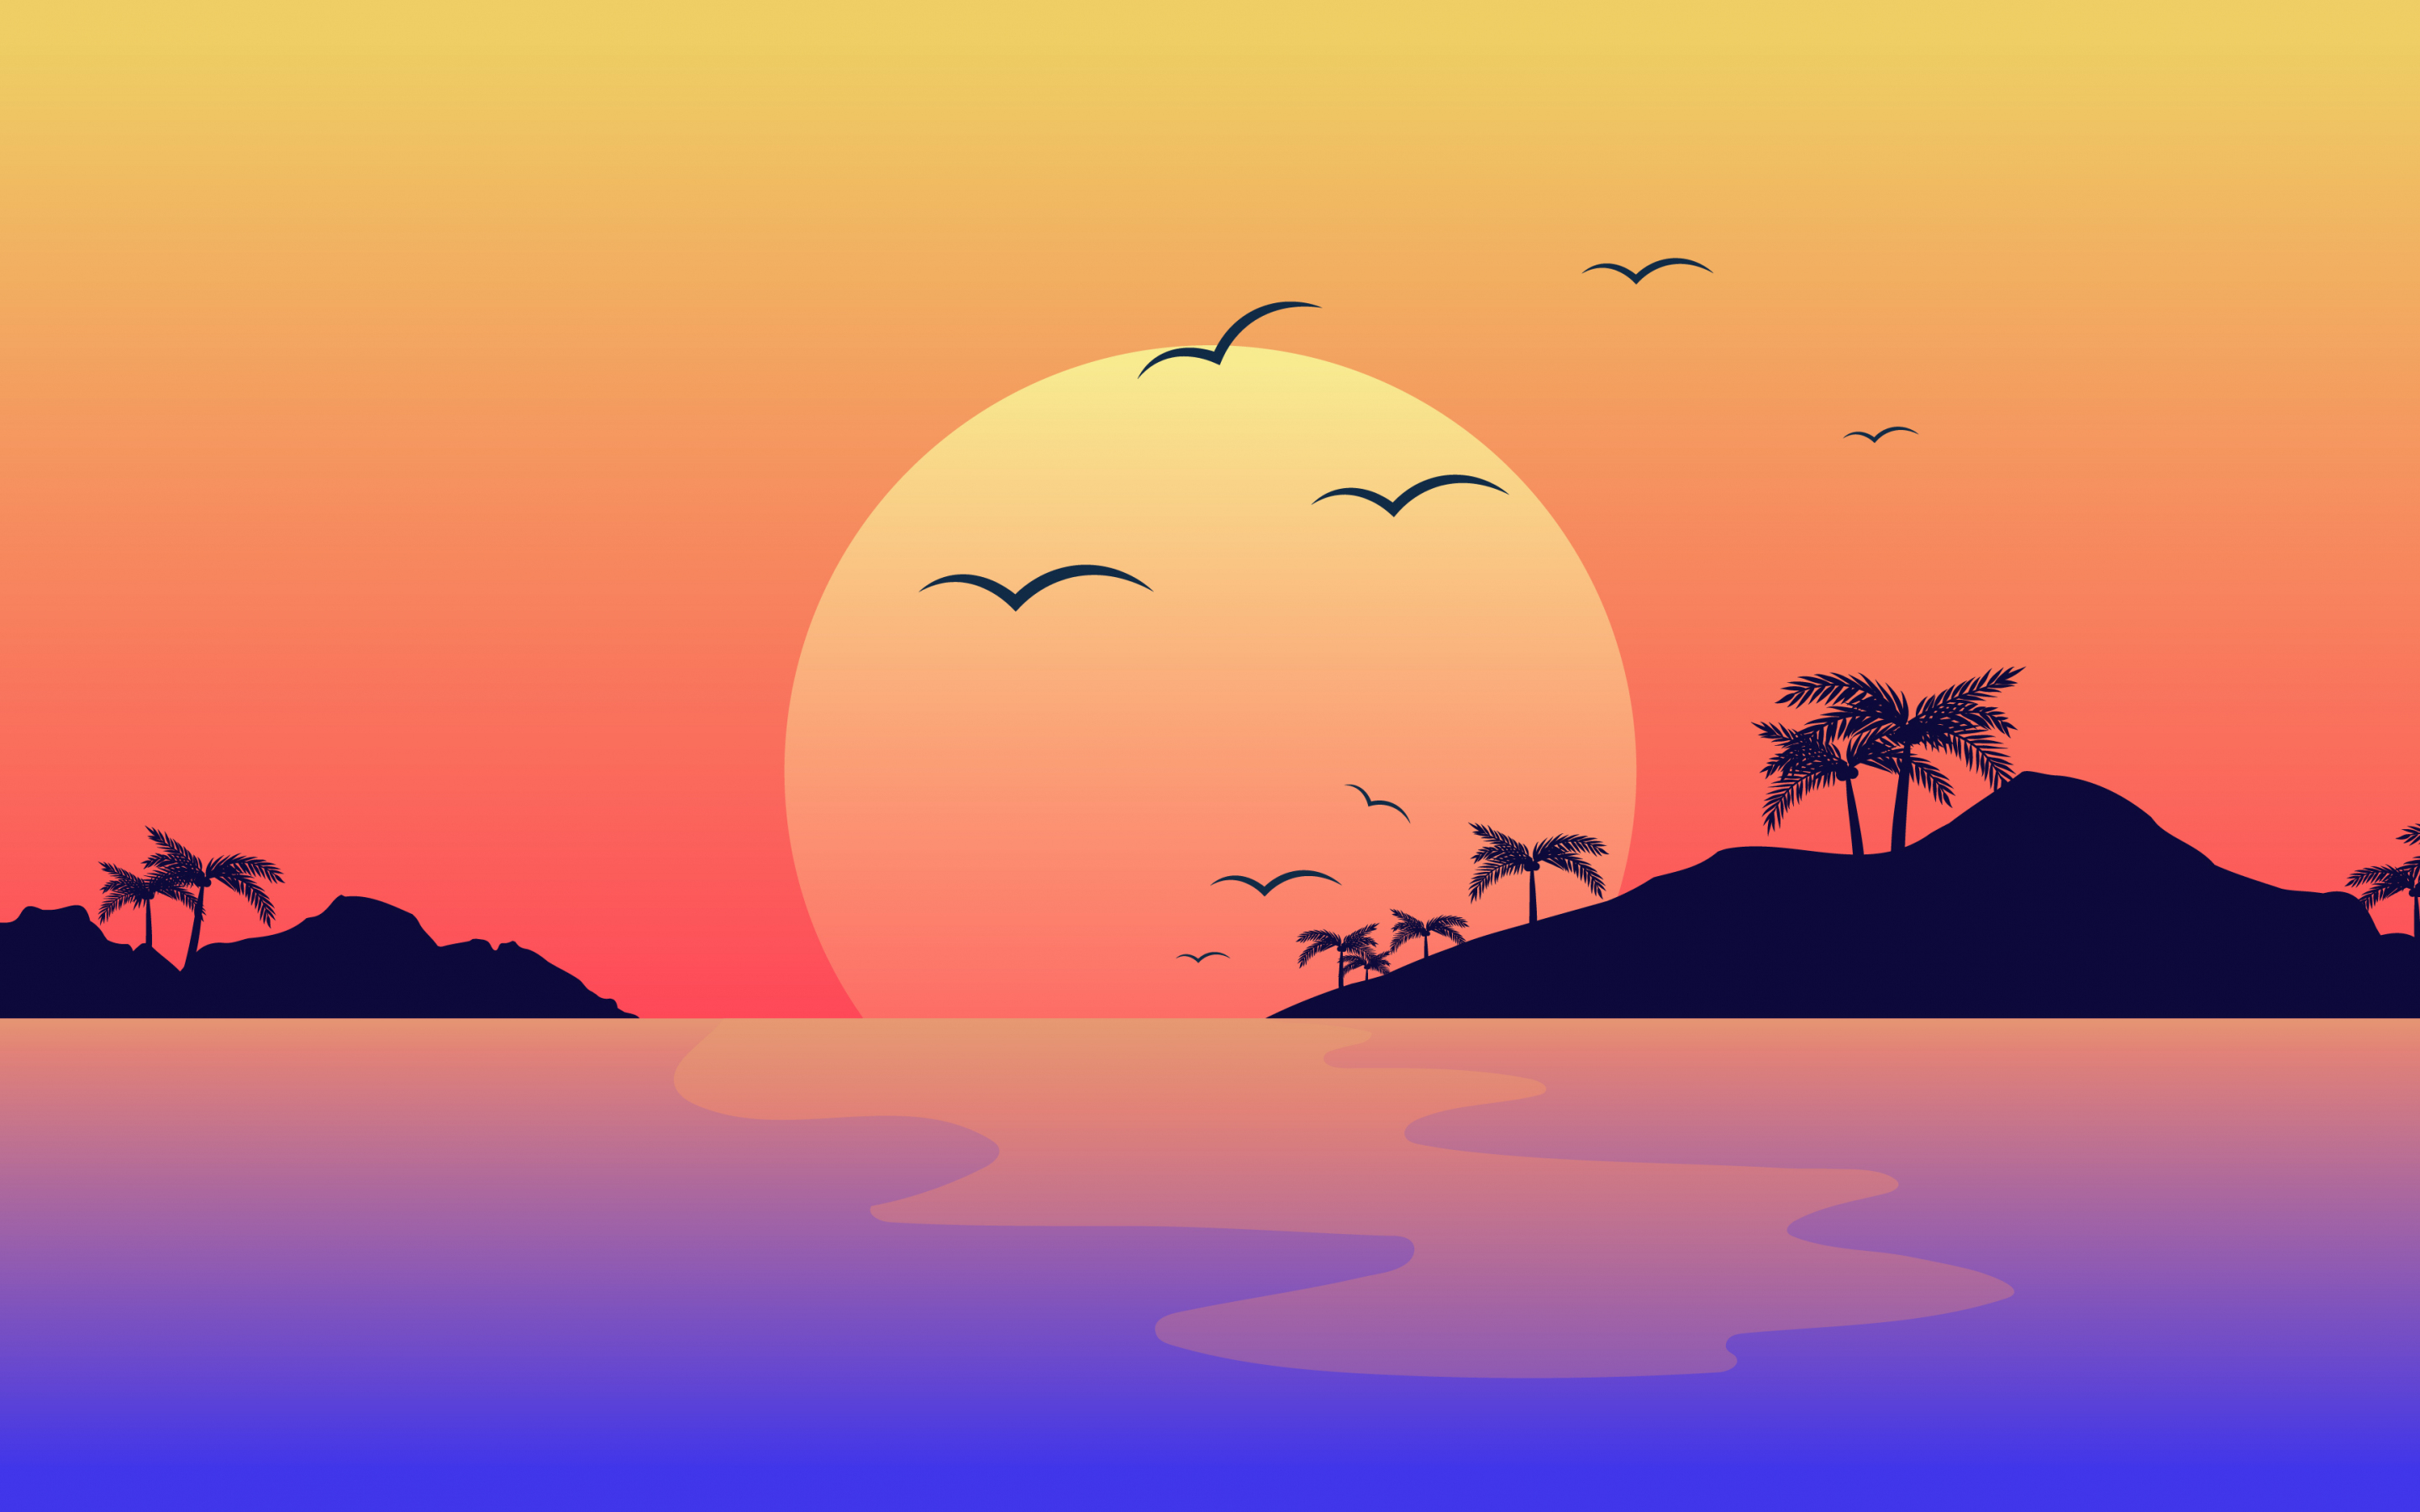 Nature, scenery, horizon, digital art, sunset, 2880x1800 wallpaper